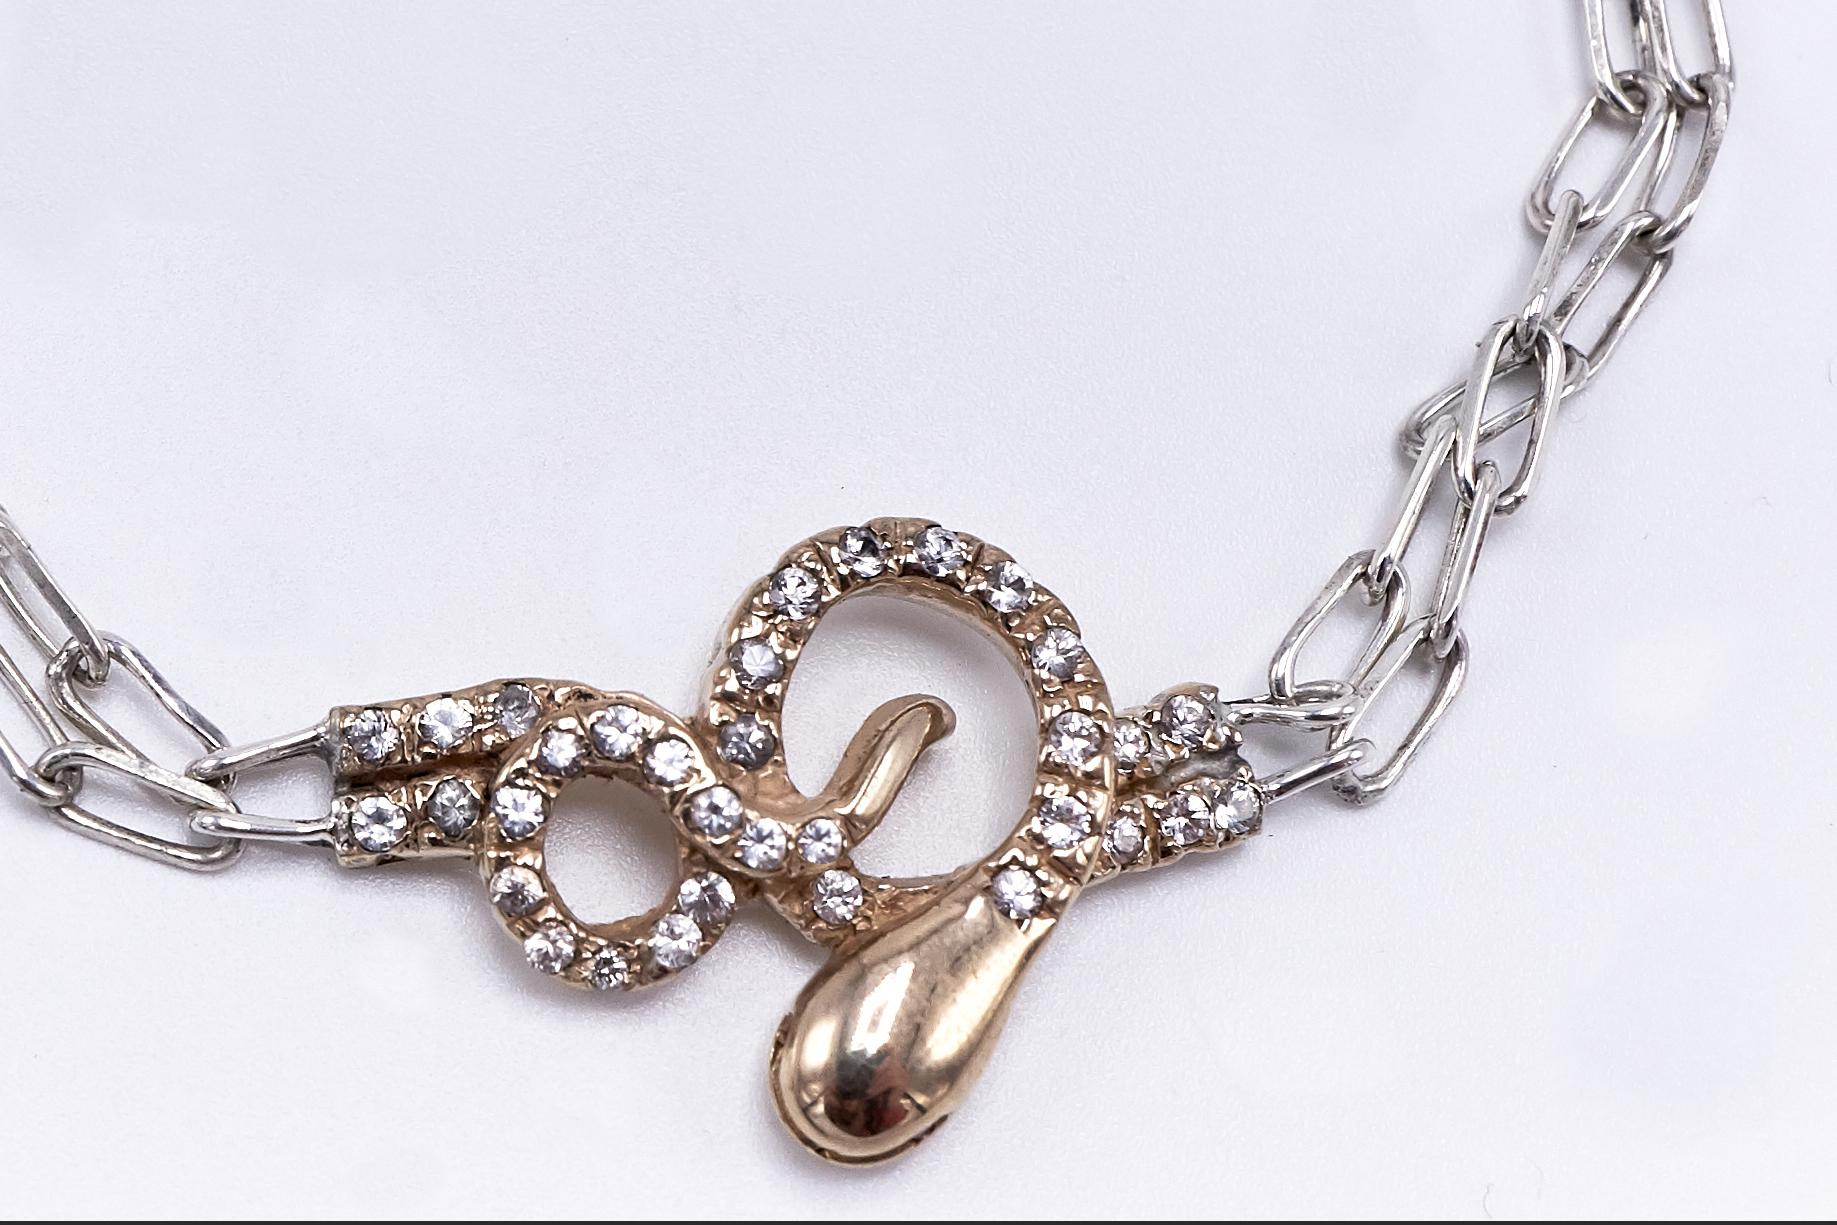 Bracelet serpent or blanc diamant chaîne épaisse J Dauphin

J DAUPHIN 